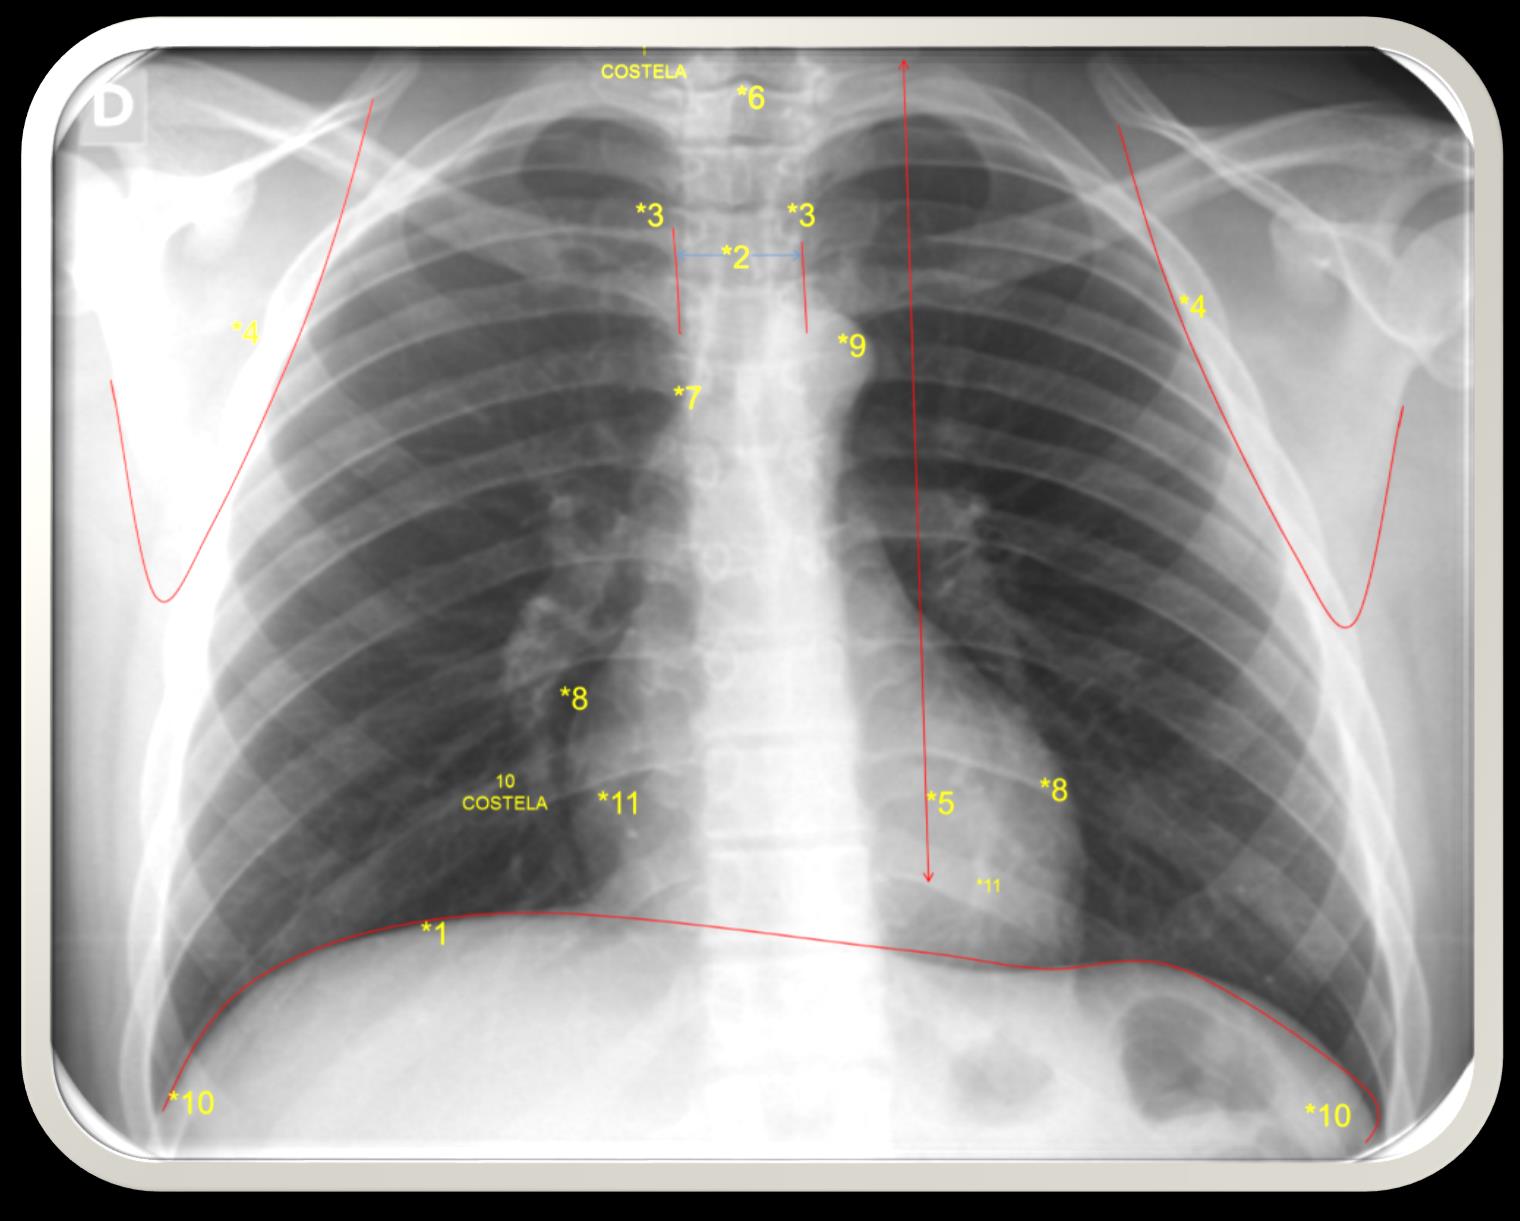 Visualização 1* diafragma 2* processo espinhoso da vertebra 3*face medial da clavícula 4*face medial da